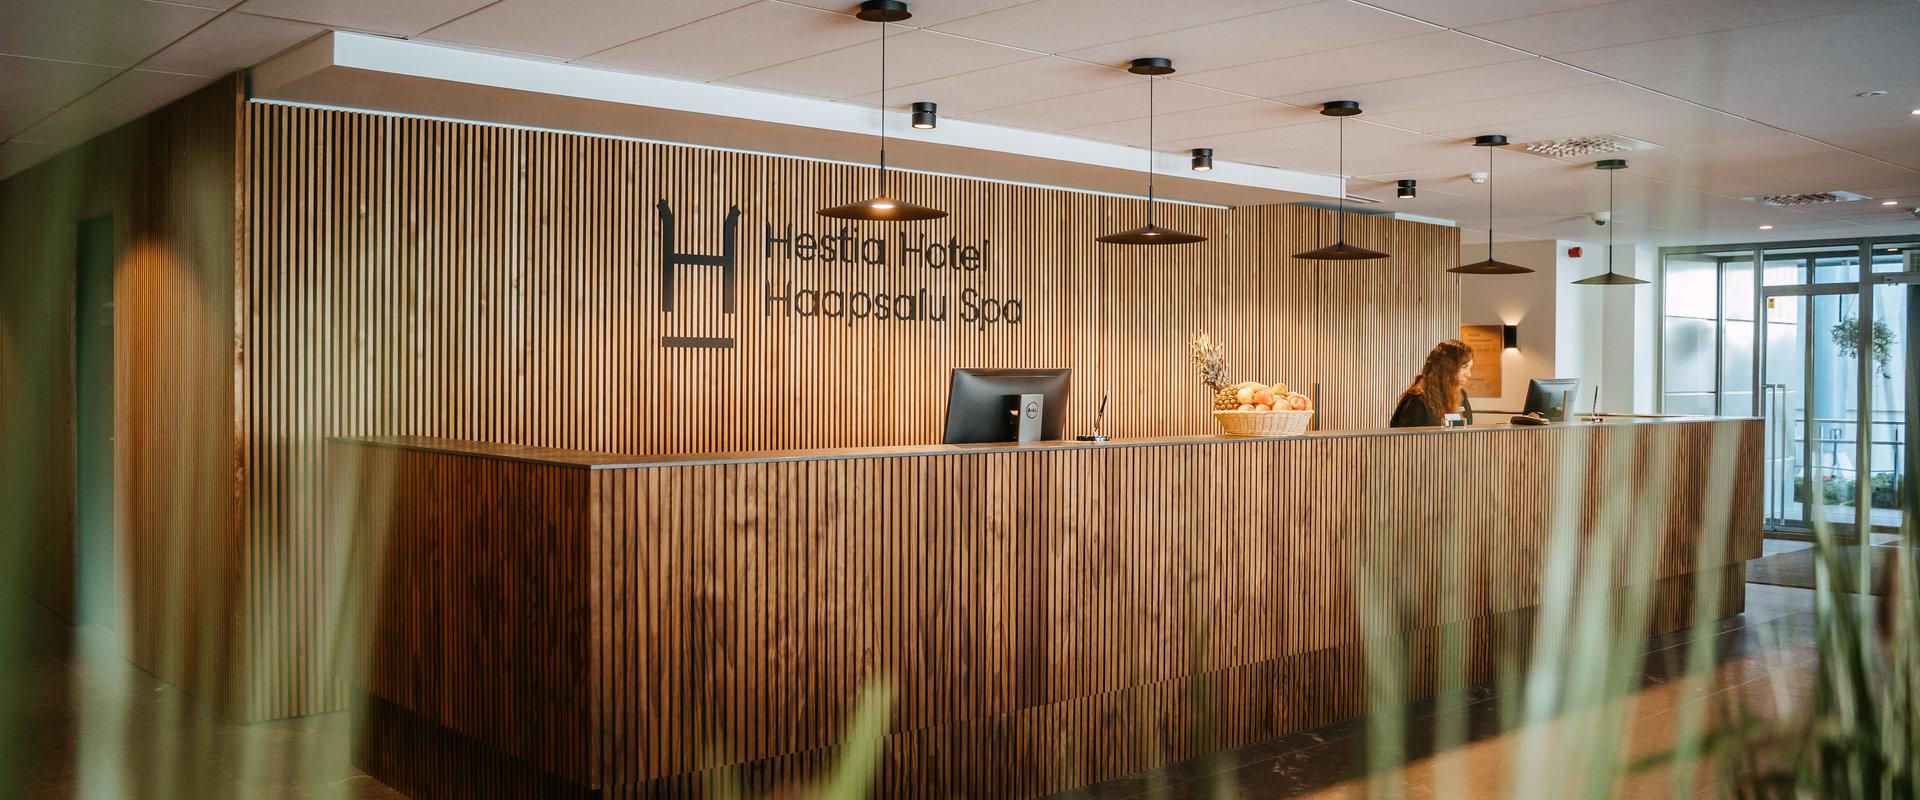 Hestia Hotel Haapsalu Spa HOTELL